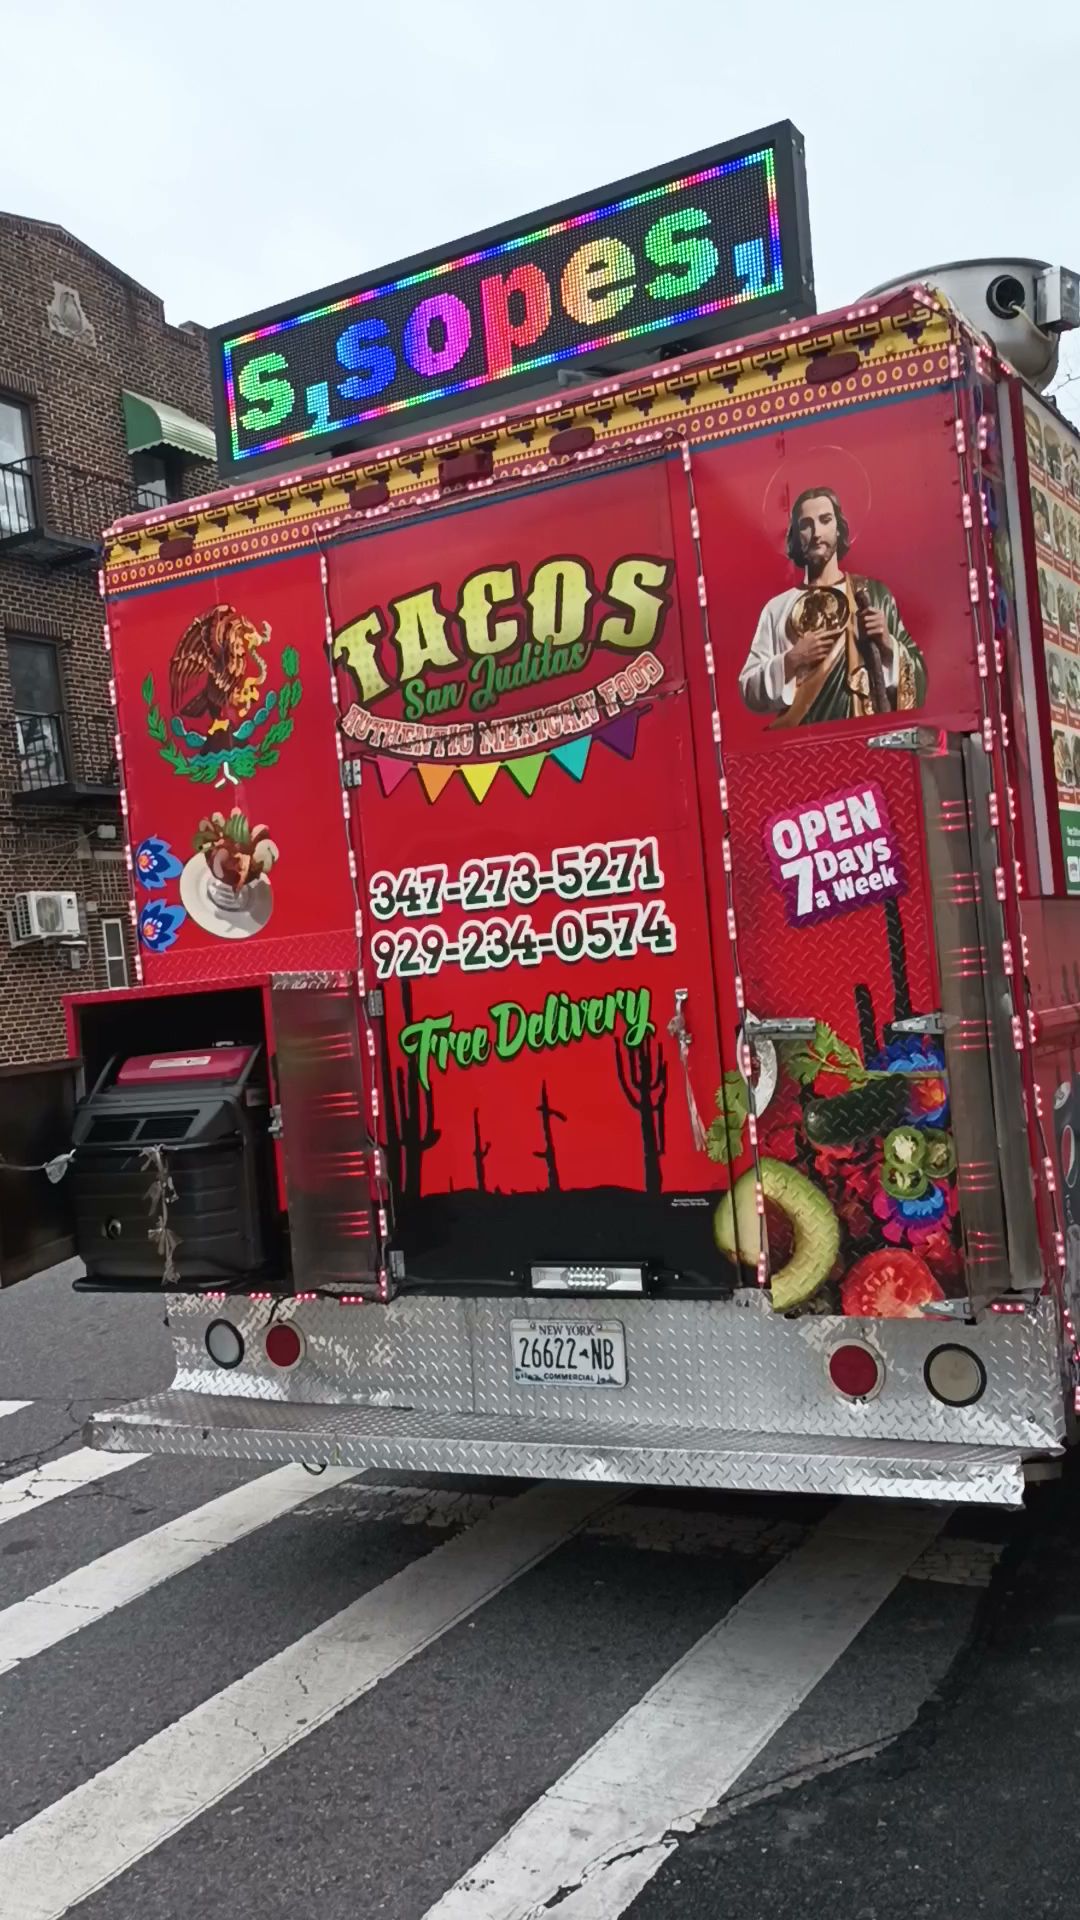 Tacos san juditas food truck